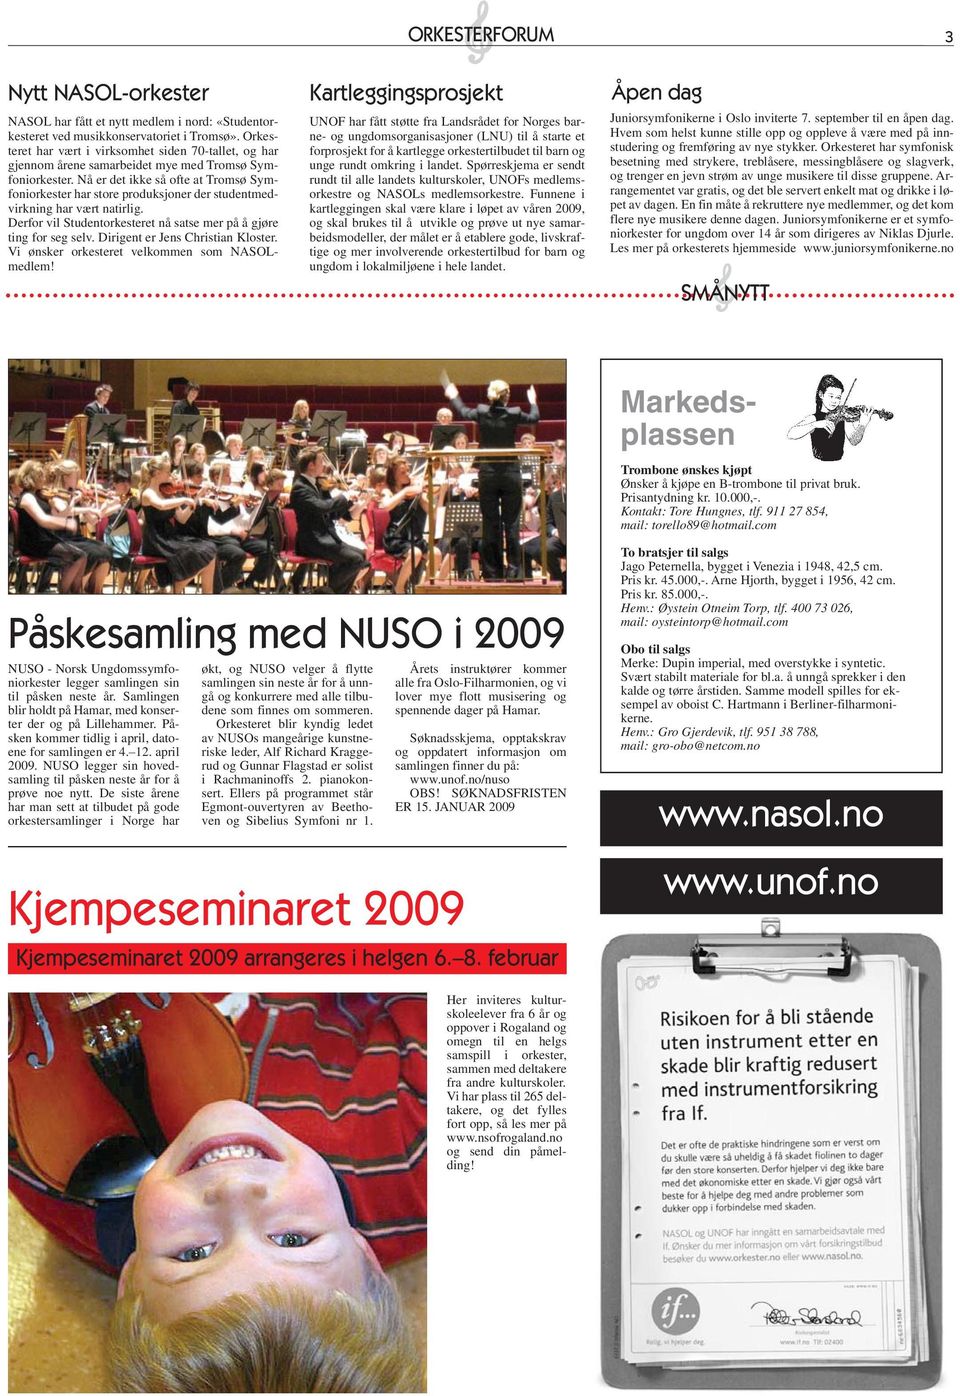 Nå er det ikke så ofte at Tromsø Symfoniorkester har store produksjoner der studentmedvirkning har vært natirlig. Derfor vil Studentorkesteret nå satse mer på å gjøre ting for seg selv.